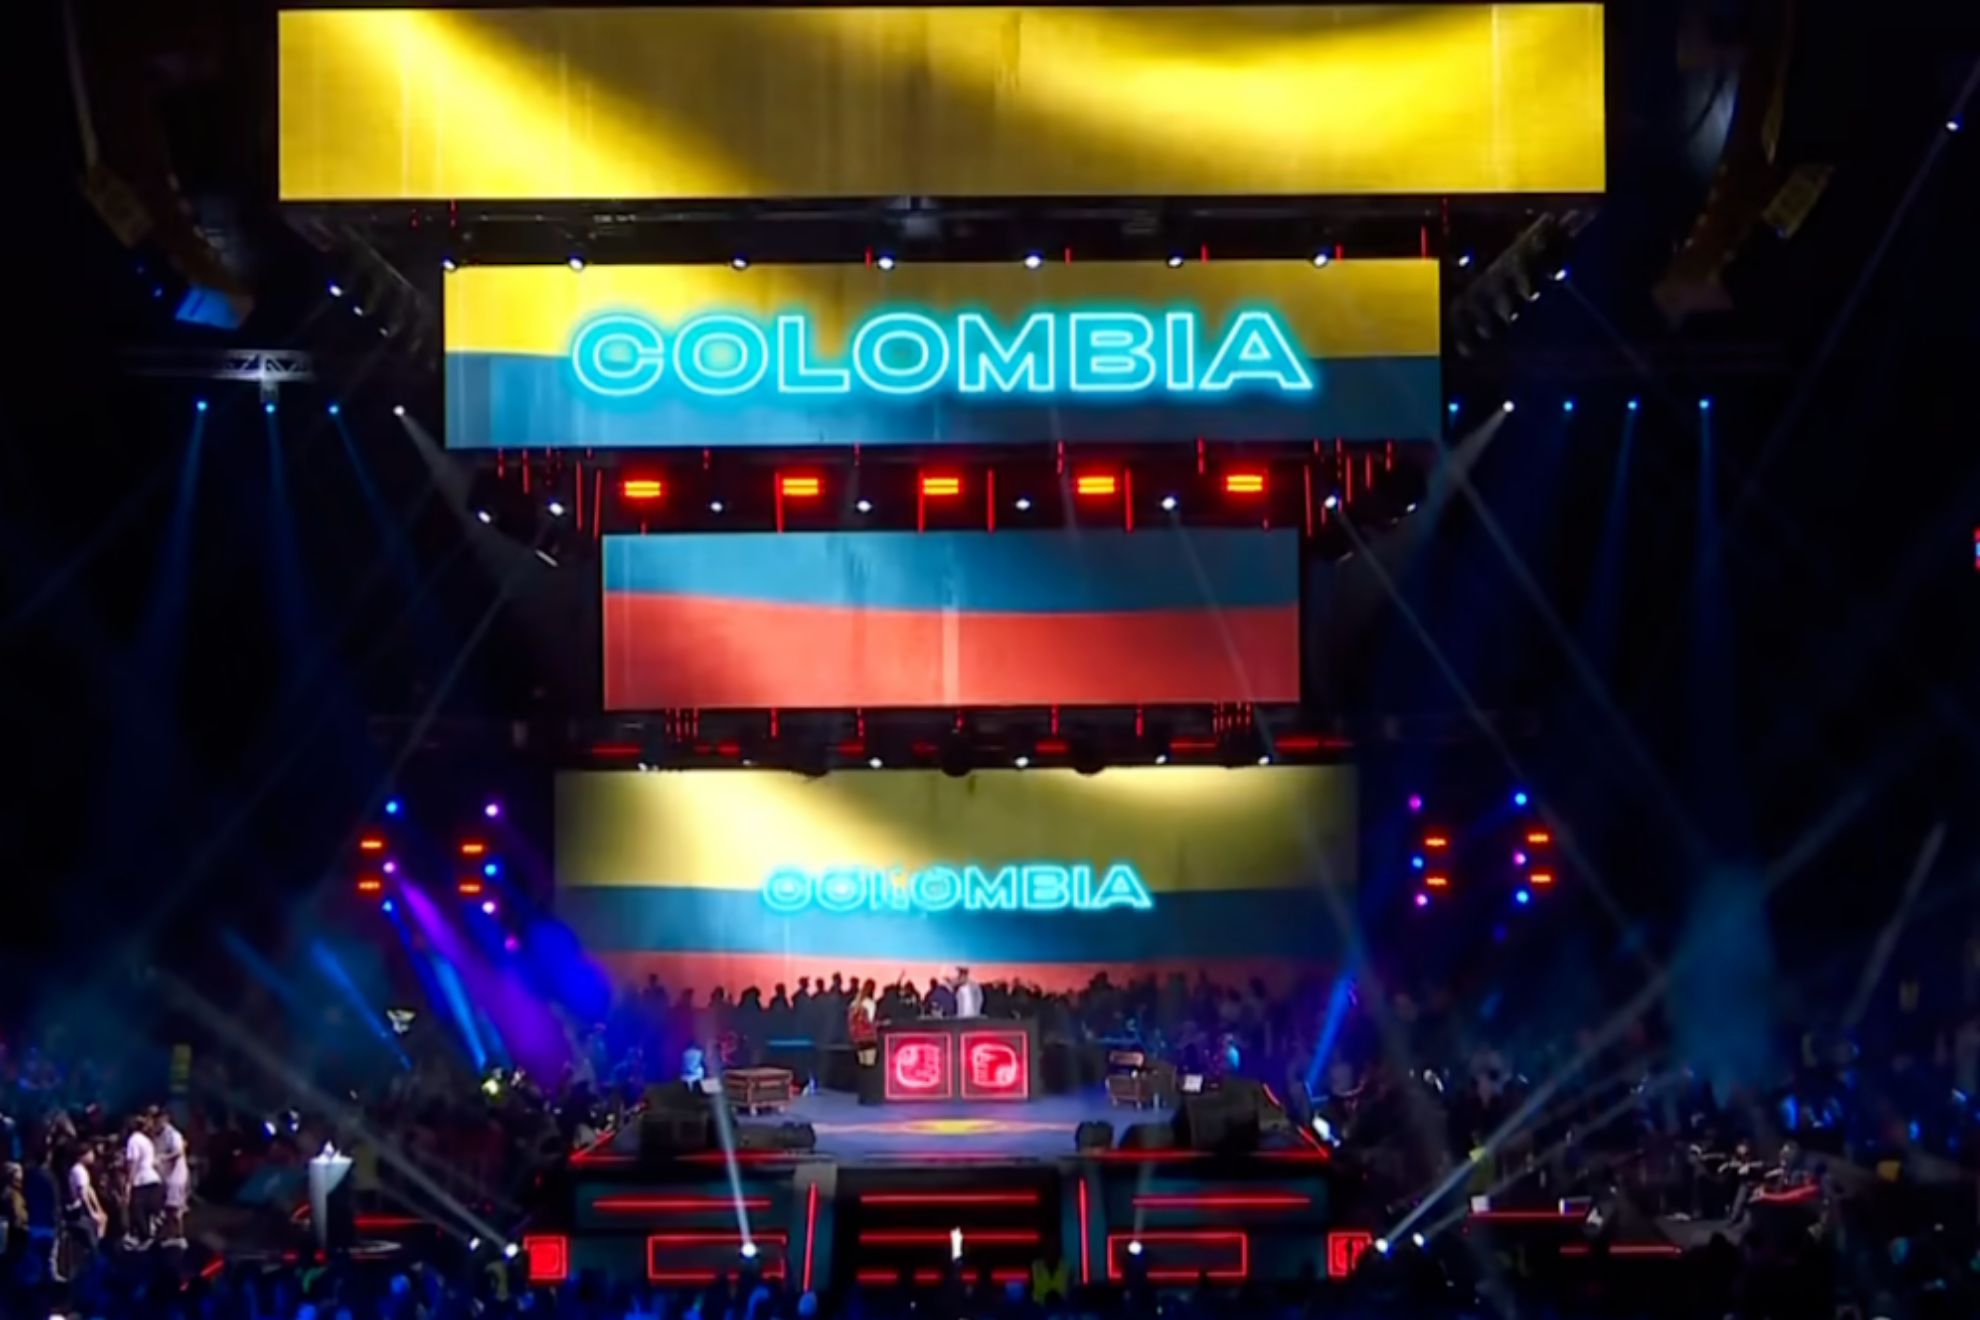 La Final de Red Bull Internacional 2023 será en Colombia